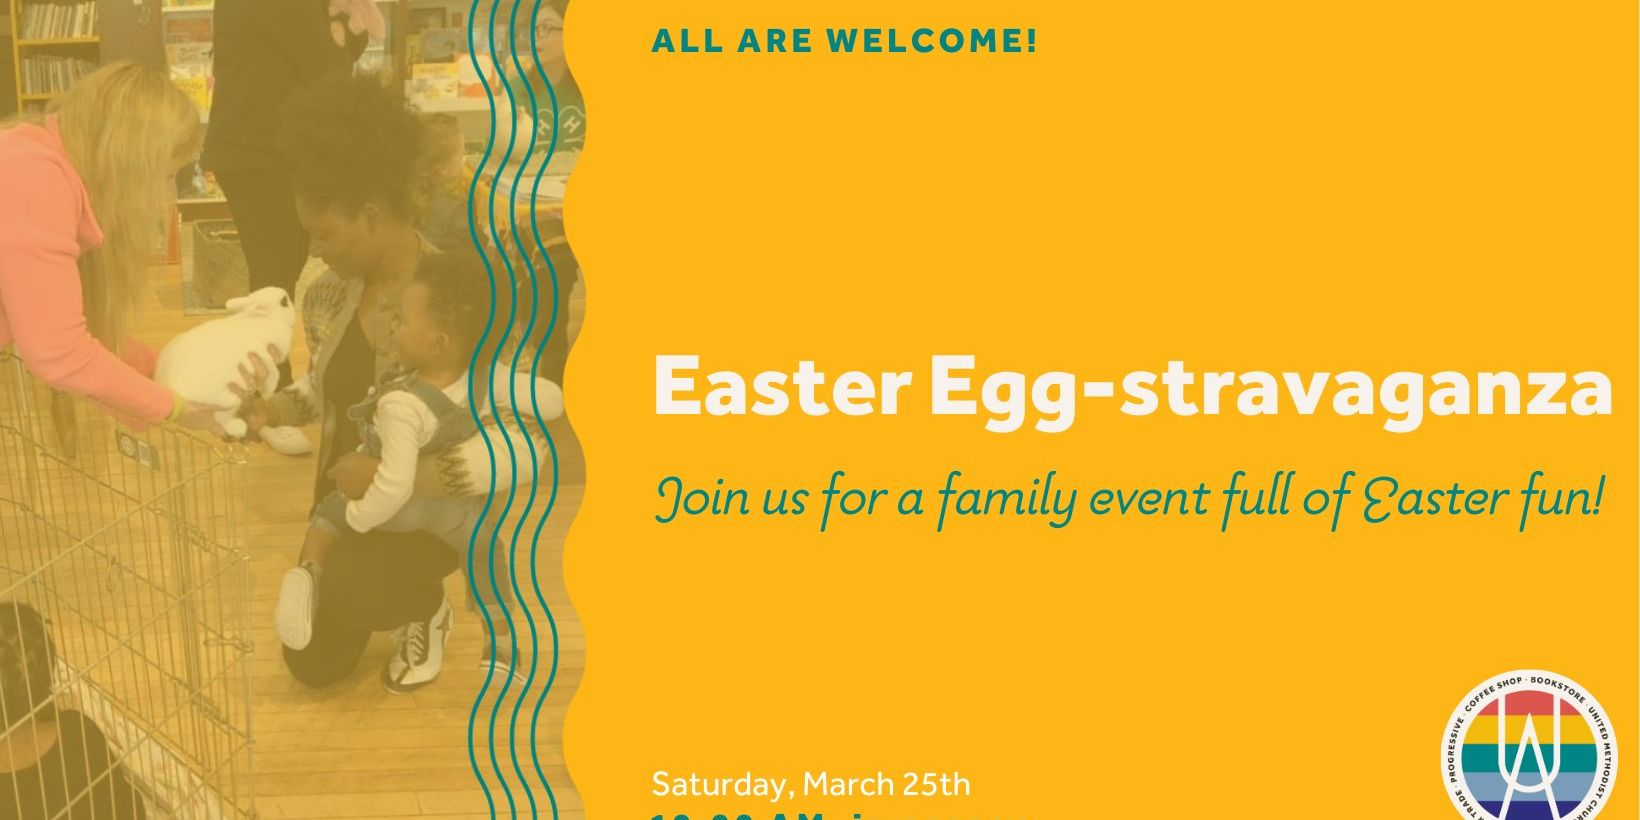 Easter Egg-stravaganza promotional image